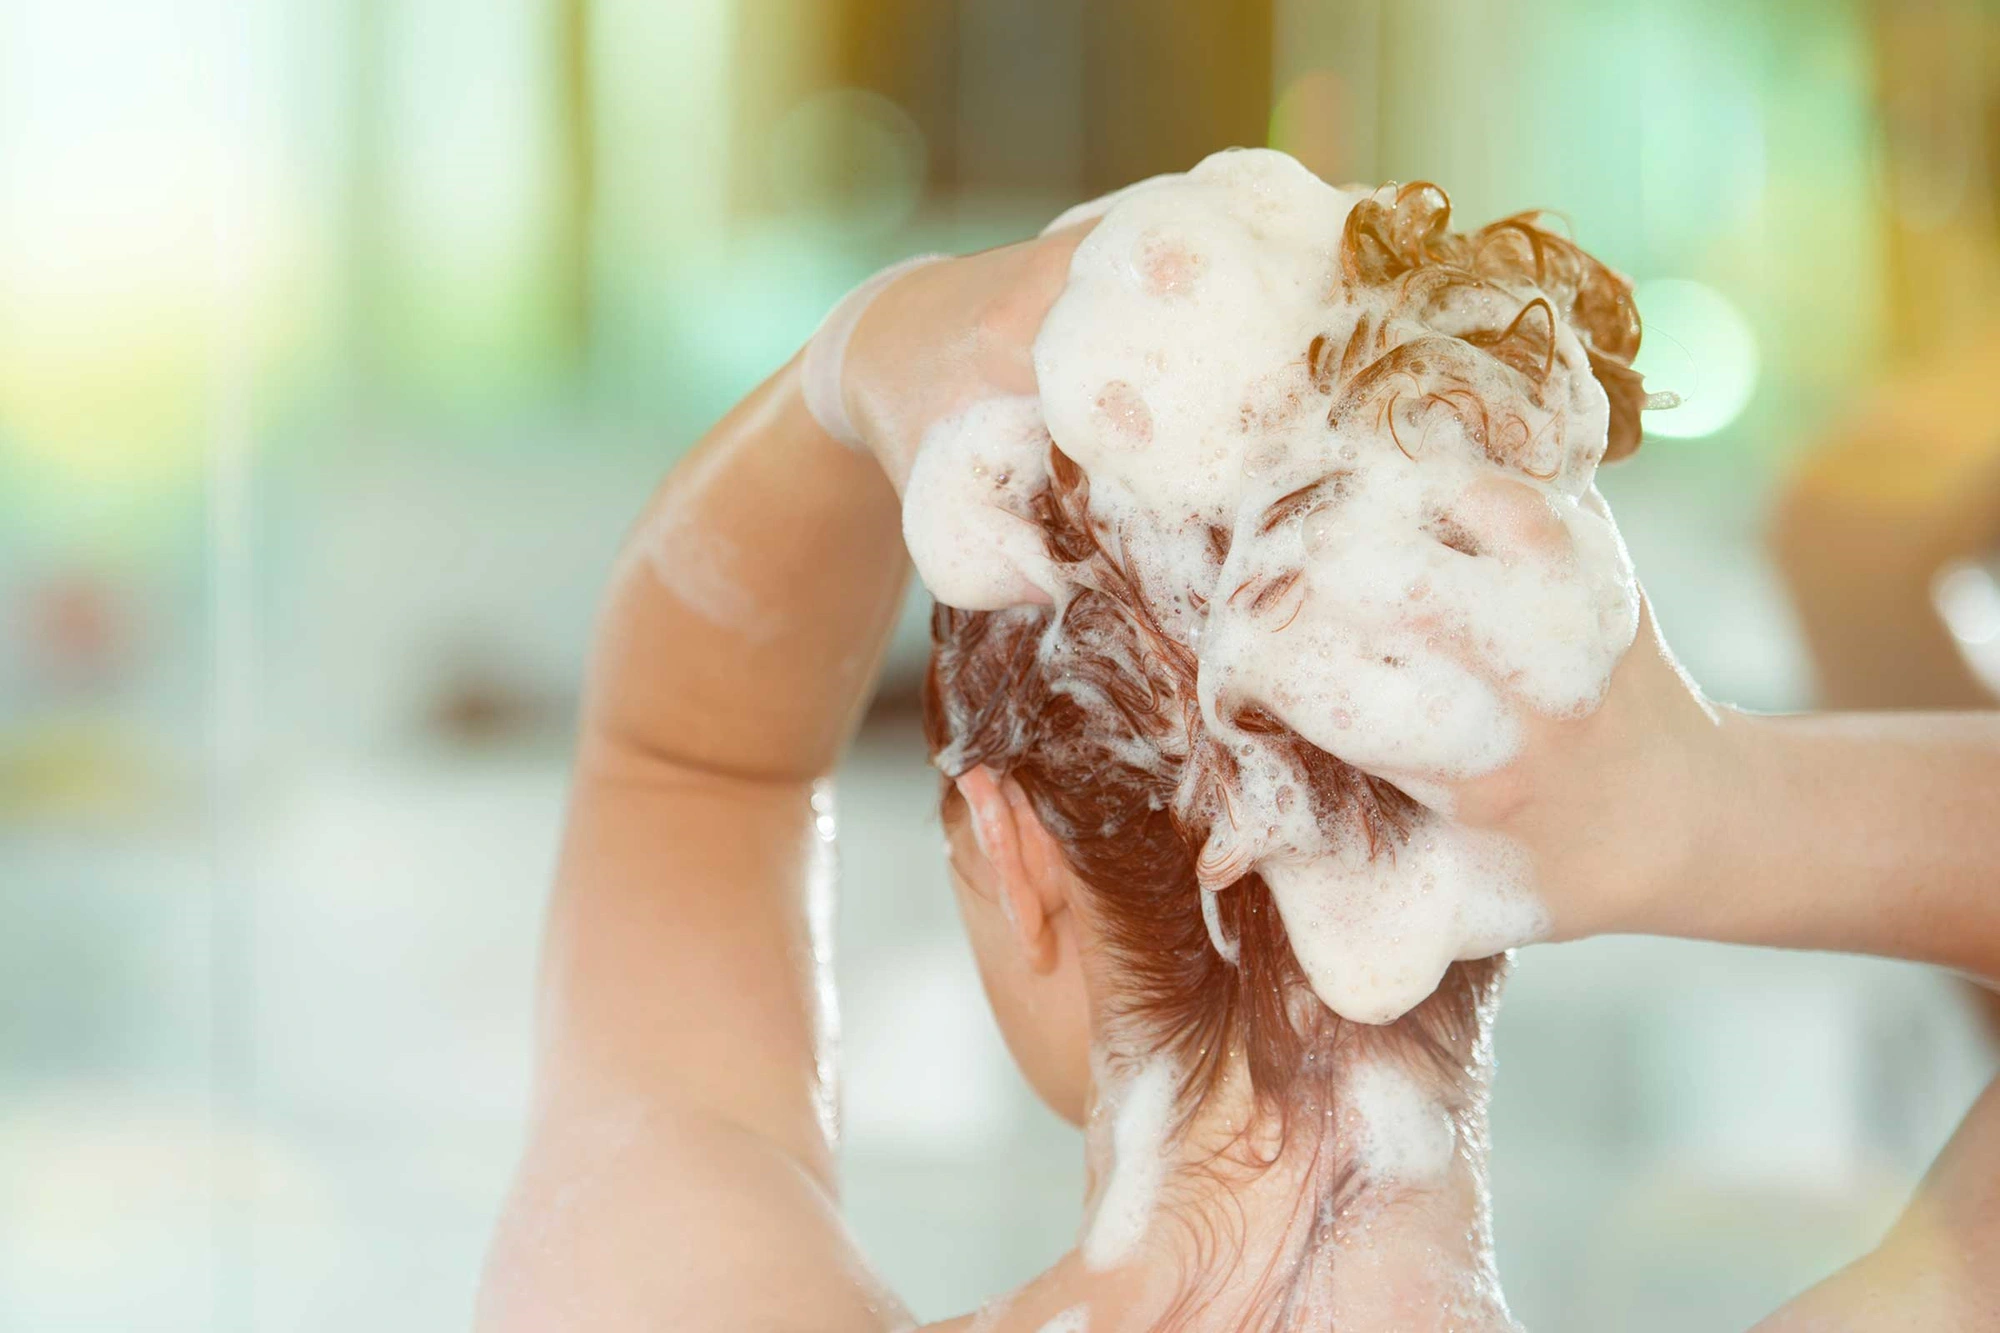 Không gội đầu quá thường xuyên  Da đầu sạch giúp mọc tóc nhanh hơn, nhưng gội đầu thường xuyên sẽ khiến tóc bị khô và mất đi tinh dầu tự nhiên. Khi gội, bạn chỉ nên mát xa tóc nhẹ nhàng và chỉ dùng lược để chải khi tóc đã khô tự nhiên ít nhất 60%.  Chọn dầu gội, dầu xả và lược phù hợp: Nếu bạn ở độ tuổi trung niên mà vẫn không biết cách chăm sóc tóc, hãy bắt đầu với những điều cơ bản như chọn dầu gội và dầu xả dành cho tóc già và trưởng thành. Hãy đảm bảo rằng bạn không thoa dầu xả lên da đầu và chỉ thoa lên các sợi tóc.  Sử dụng lược có ngạnh nhựa tròn hoặc lông nylon để tránh gãy rụng. Việc chải tóc hàng ngày sẽ điều chỉnh quá trình lưu thông máu trên da đầu và ngăn ngừa tóc xoăn và rối, mang lại sức sống cho mái tóc của bạn.